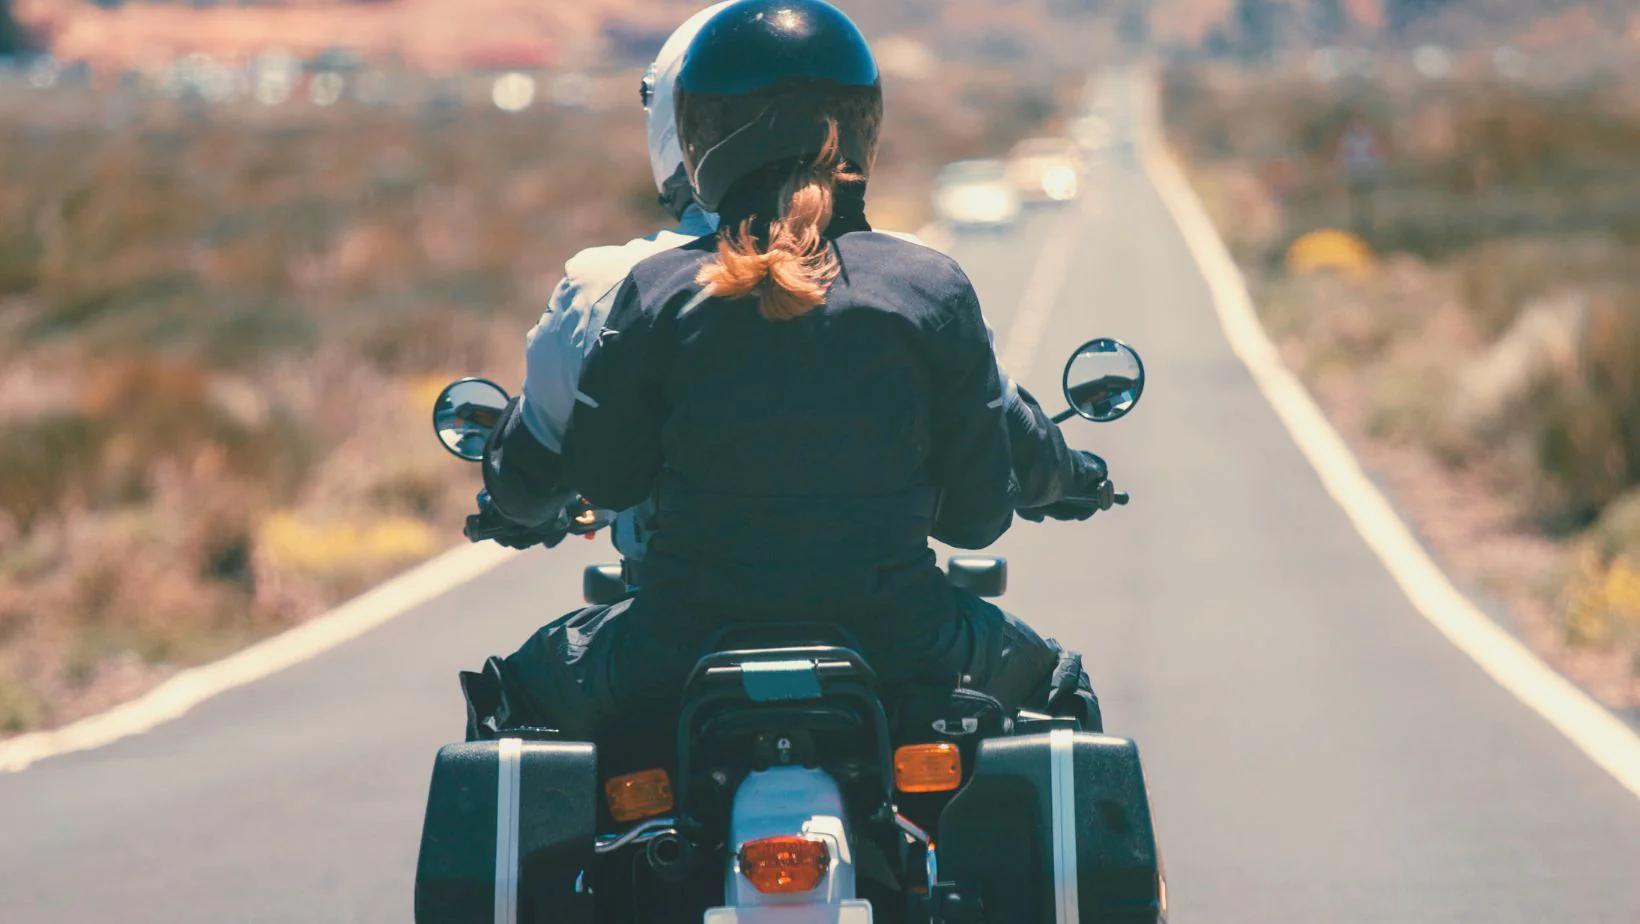 si lleva un pasajero en la motocicleta al frenar - Qué pasa si lleva un pasajero en la motocicleta